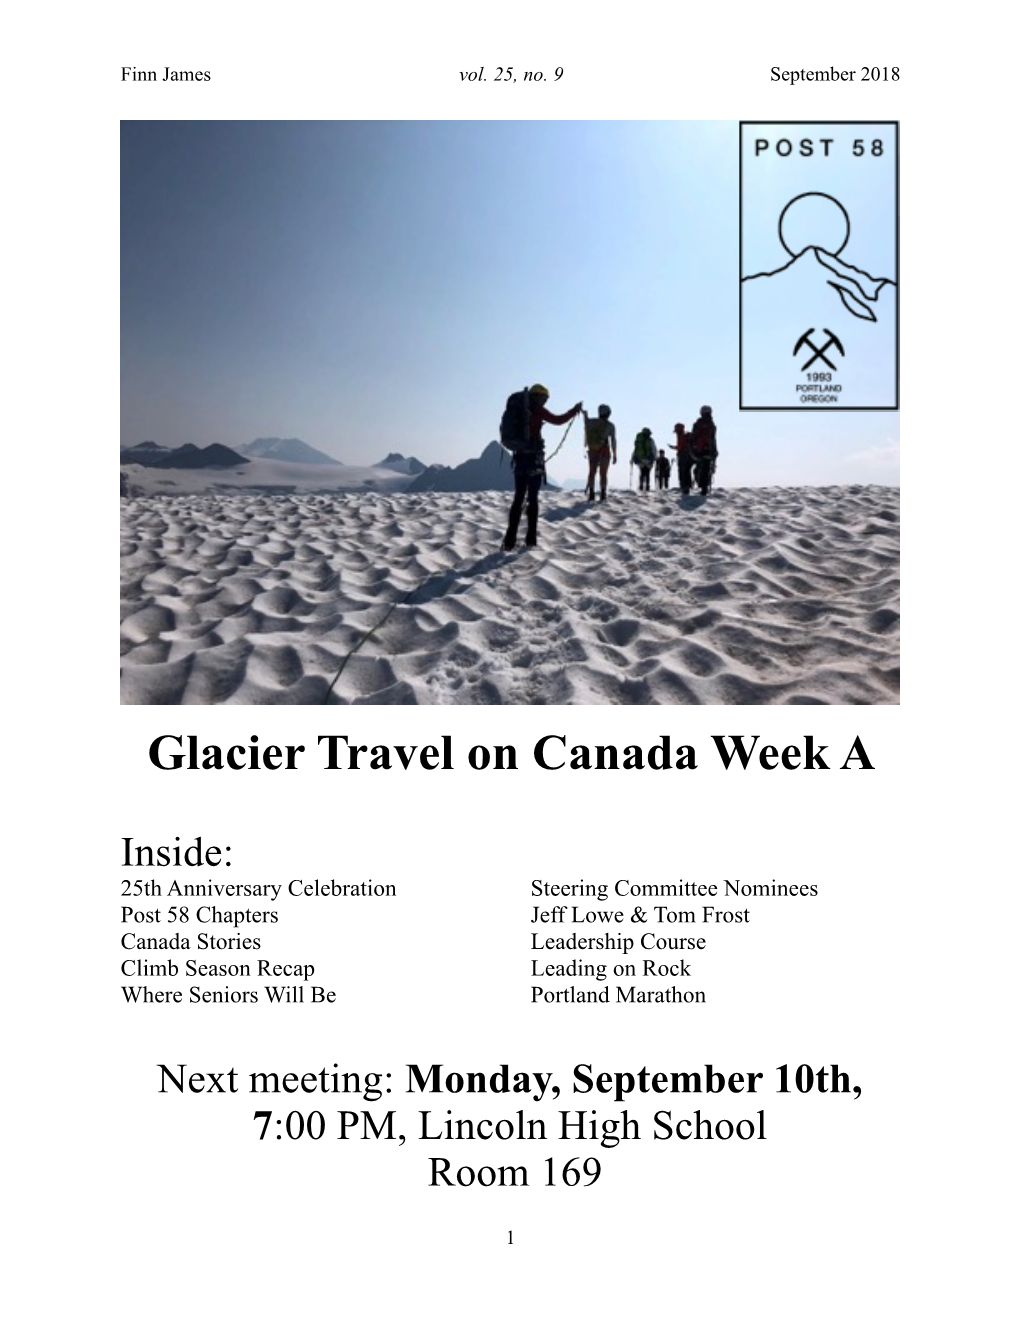 Glacier Travel on Canada Week A